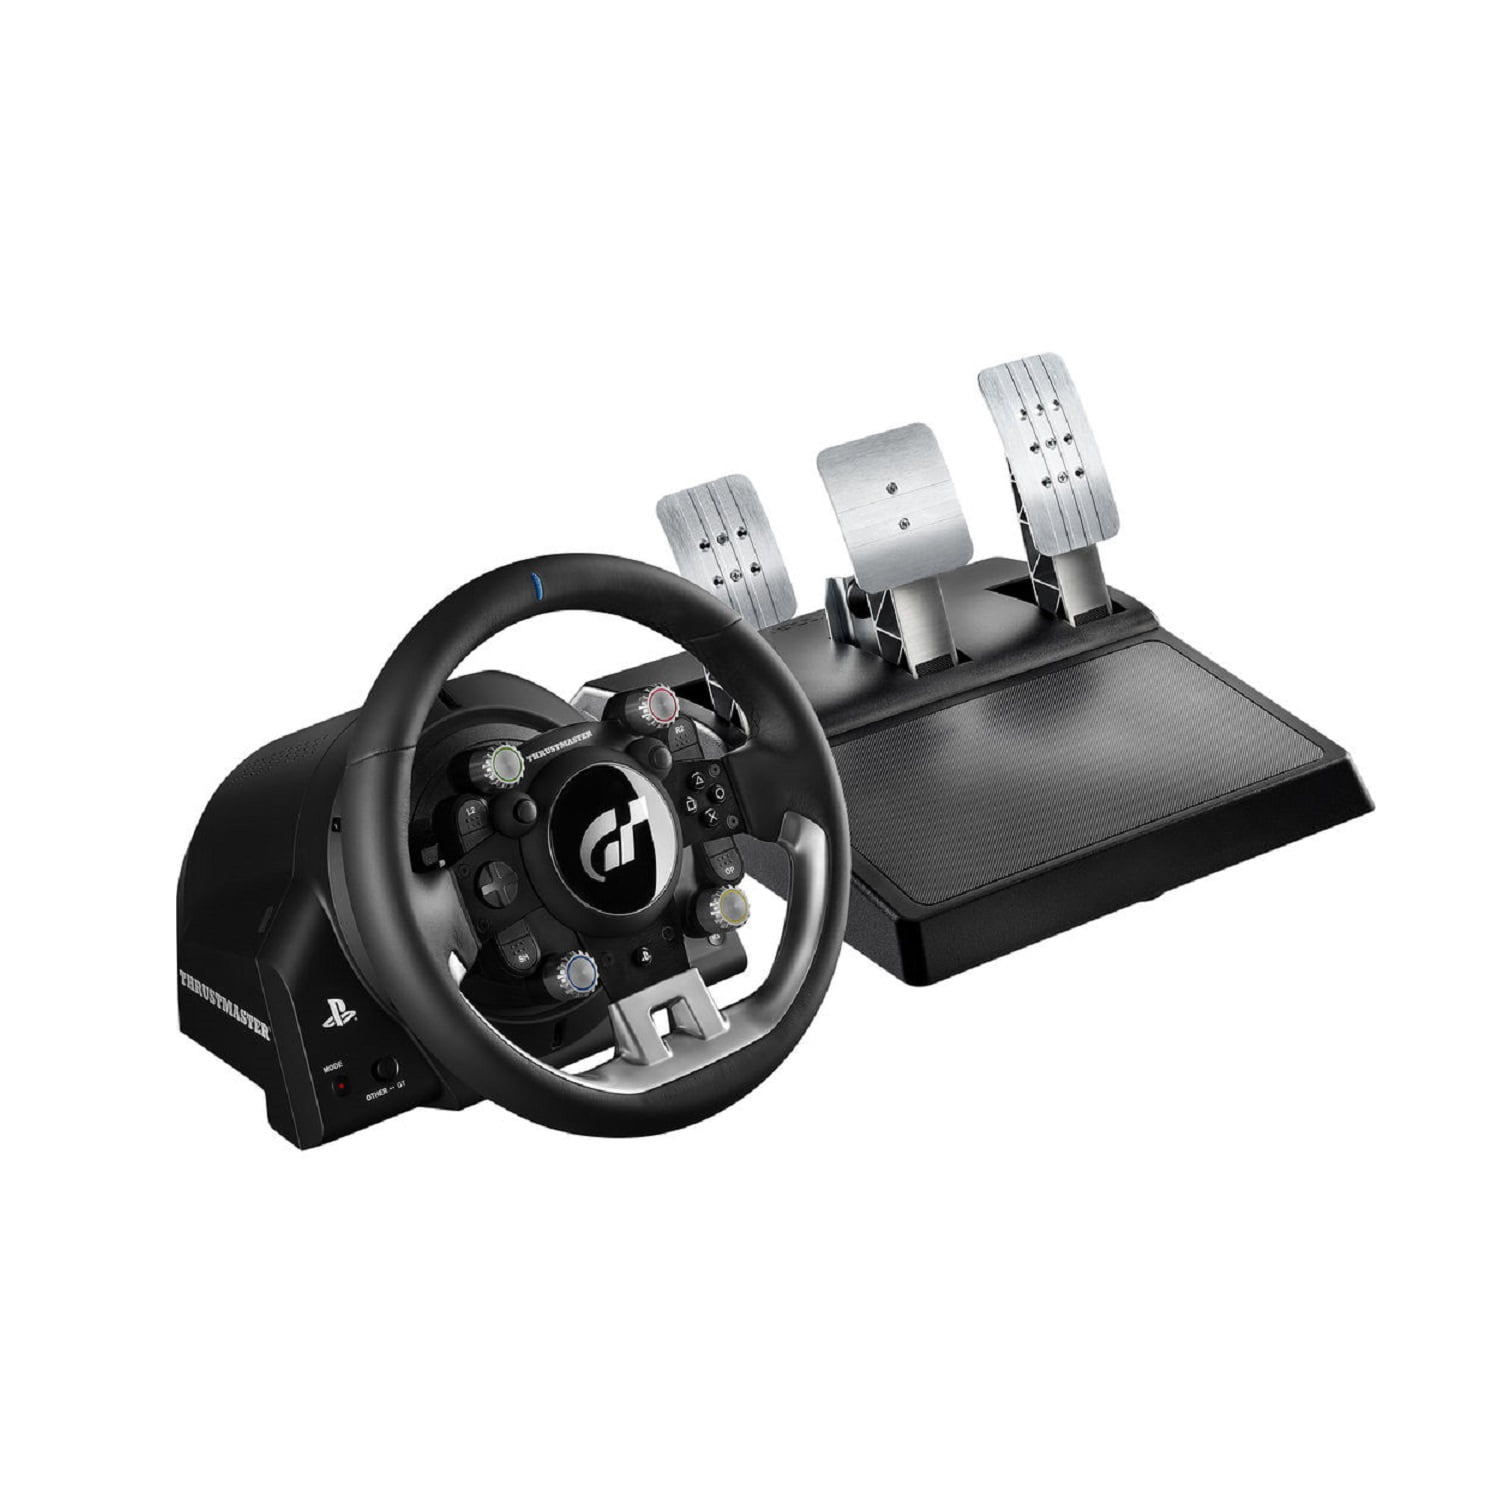 beslutte Mig hårdtarbejdende Thrustmaster PS4/PC T-GT Racing Wheel, 4169087 - Walmart.com